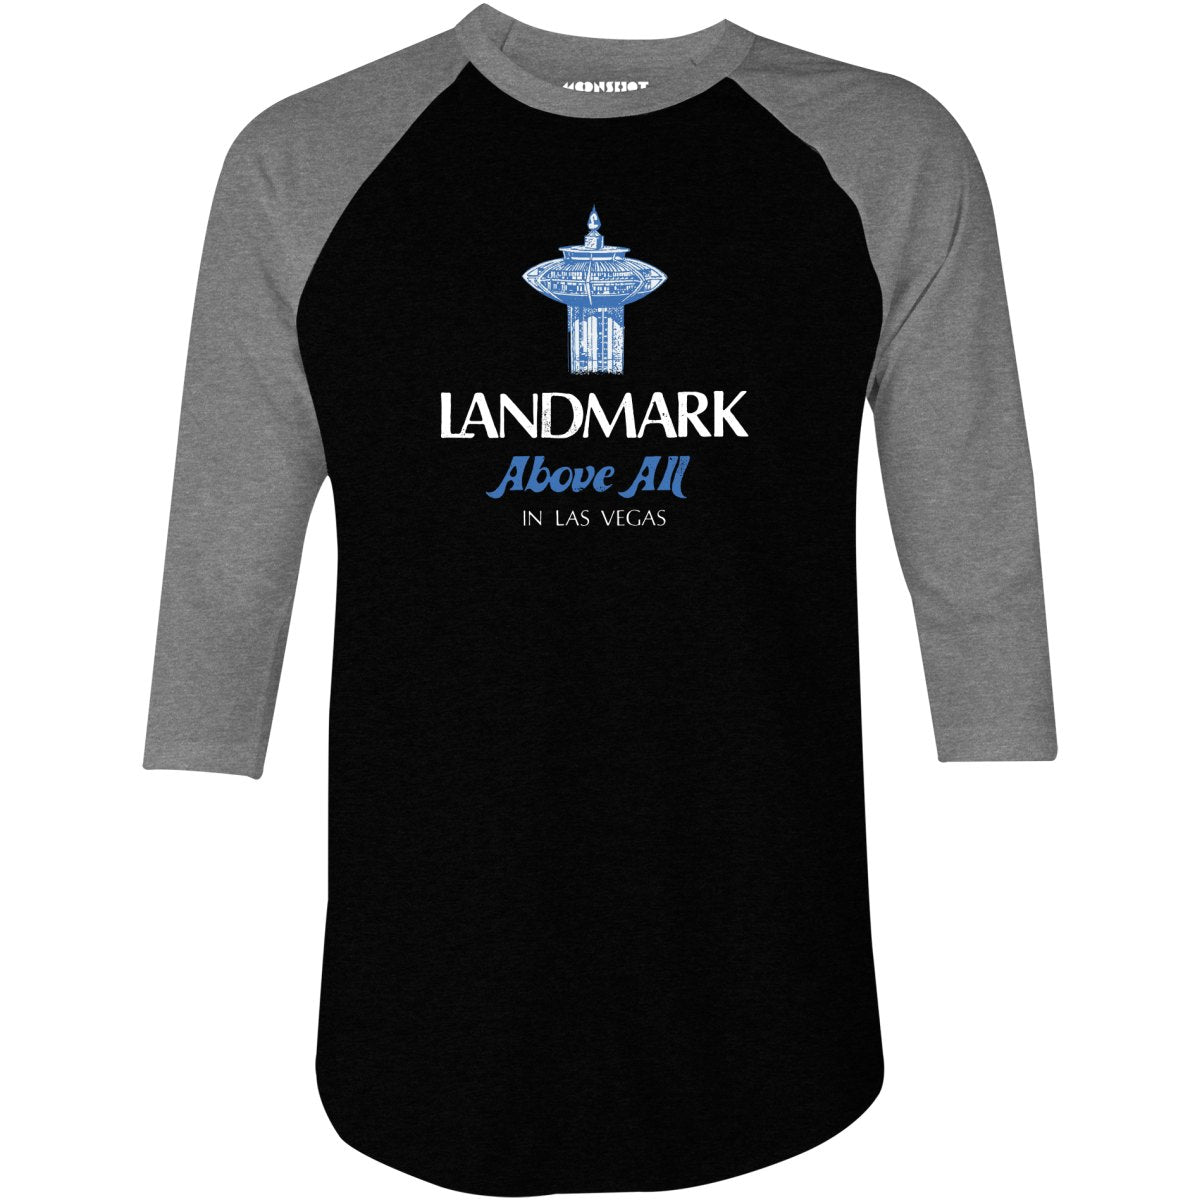 Landmark Above All - Vintage Las Vegas - 3/4 Sleeve Raglan T-Shirt